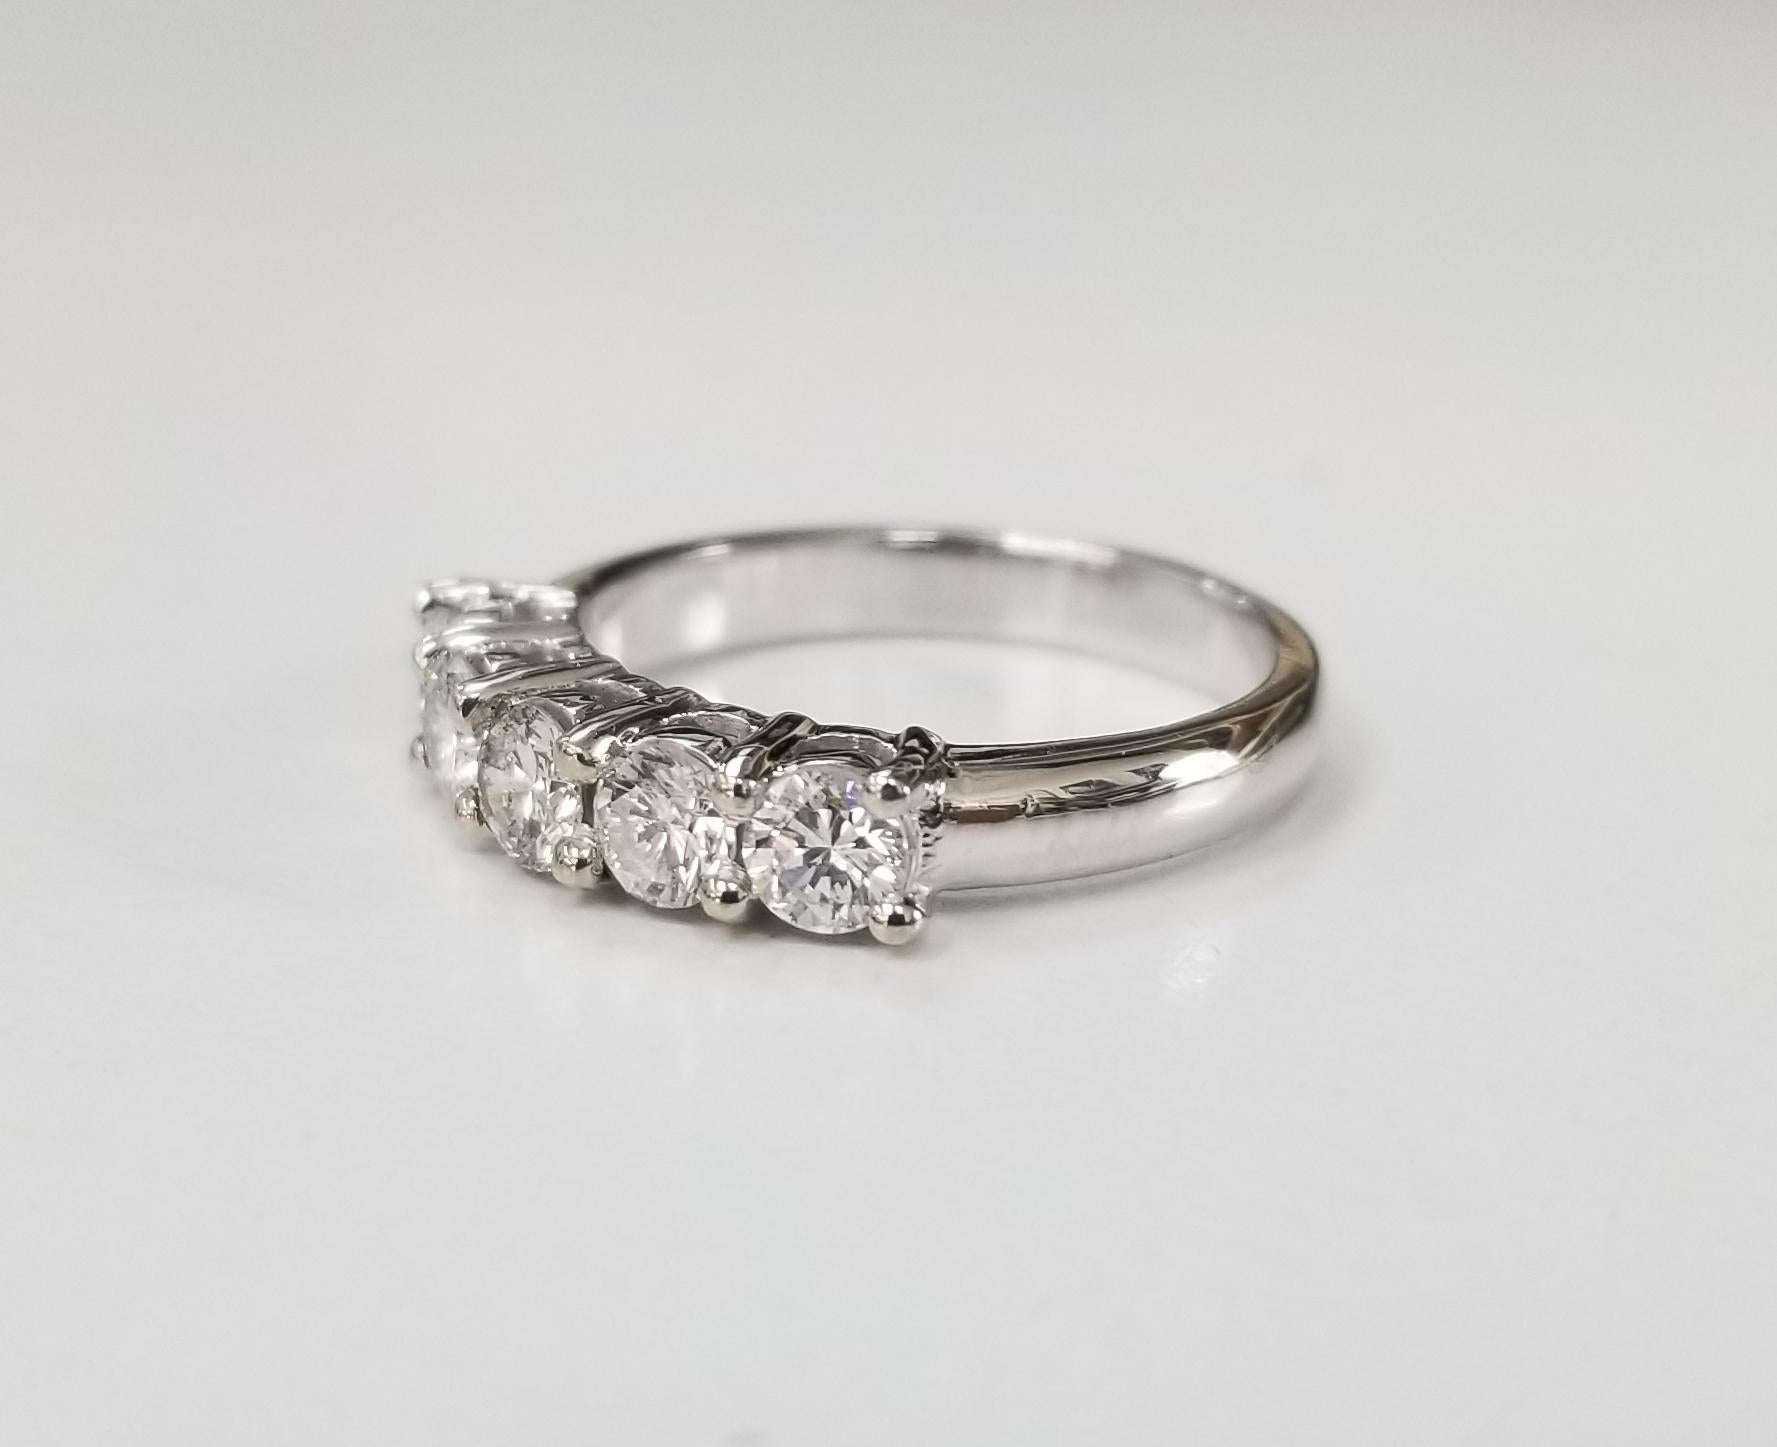 14 karat 5 stone diamond ring weighing .95pts. color 